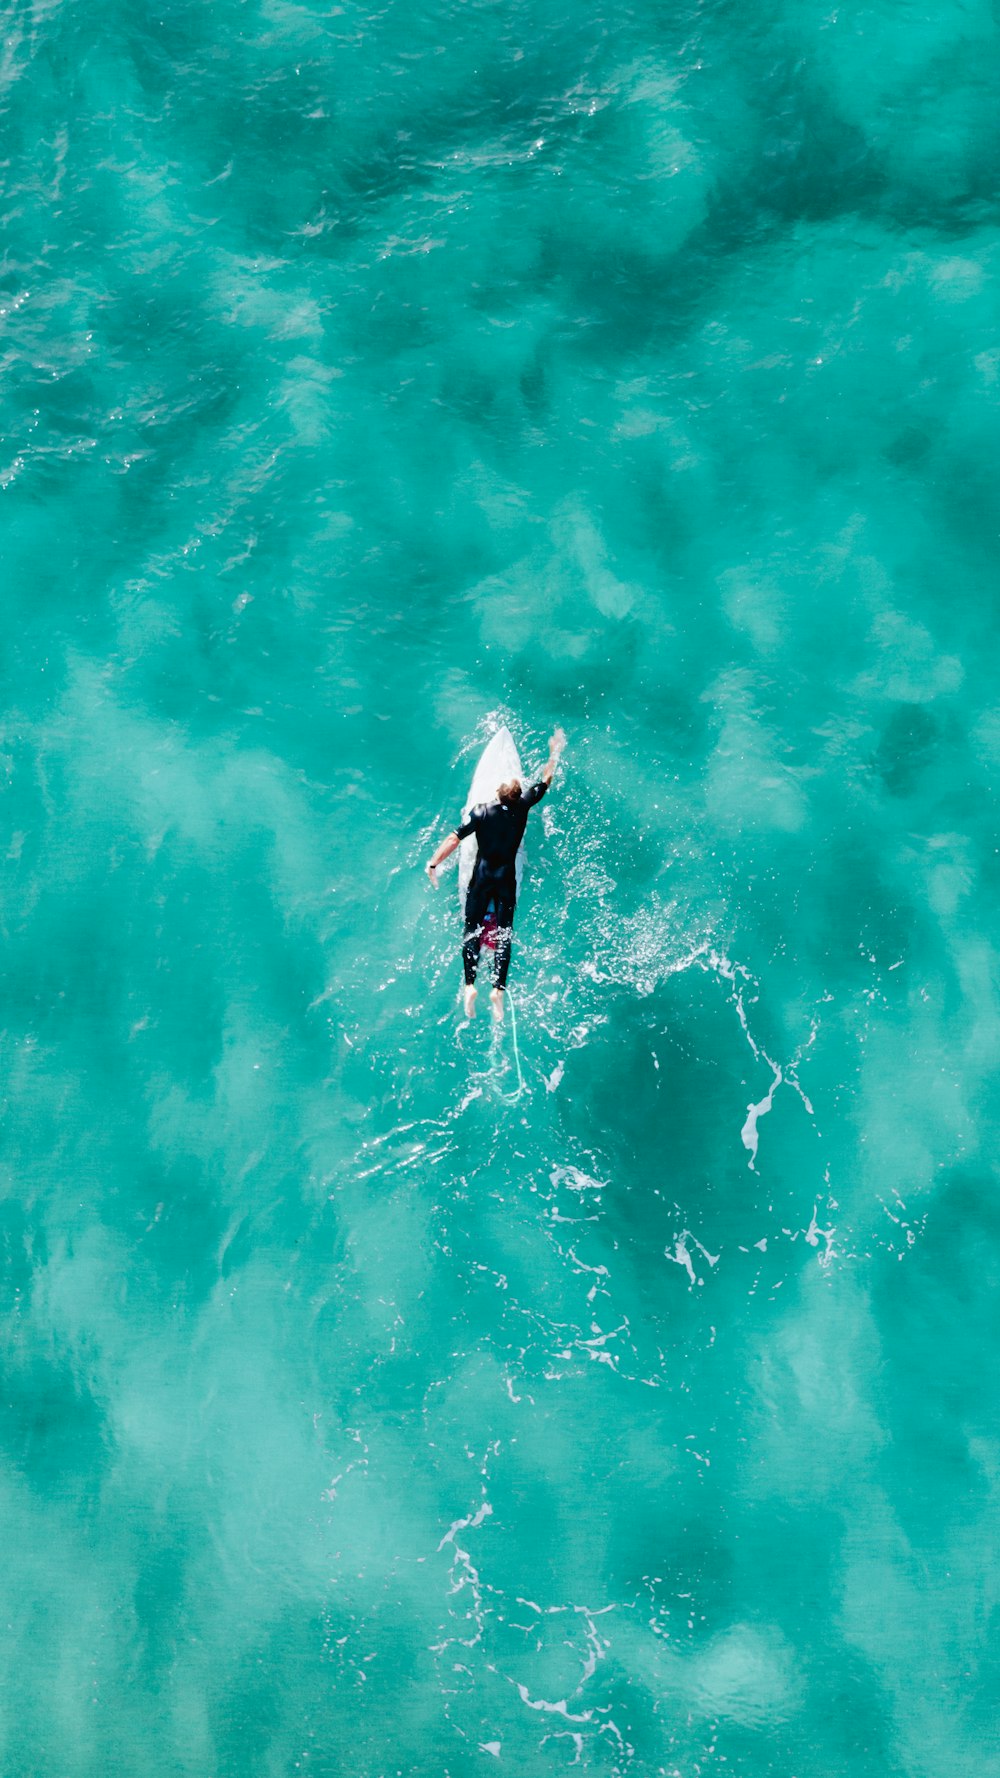 Mann im schwarzen Neoprenanzug Surfen auf dem Wasser